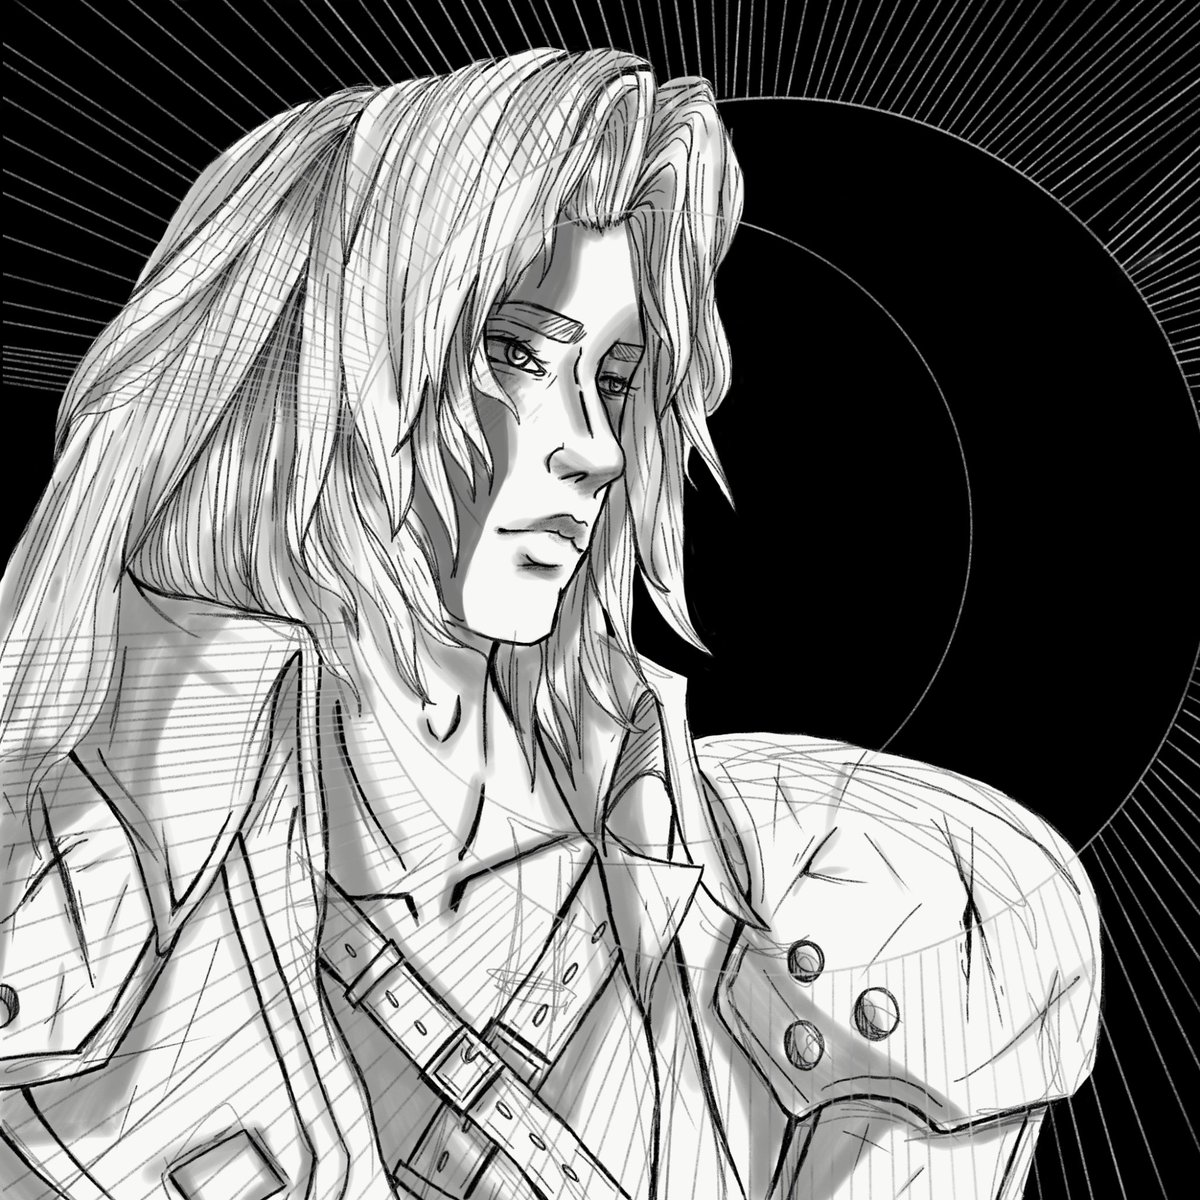 🌘 Sephiroth 2019 🌒
#ff7 #FinalFantasyVII #Sephiroth #ff7art #ArtistOnTwitter #art #digitalart #drawing #illustration